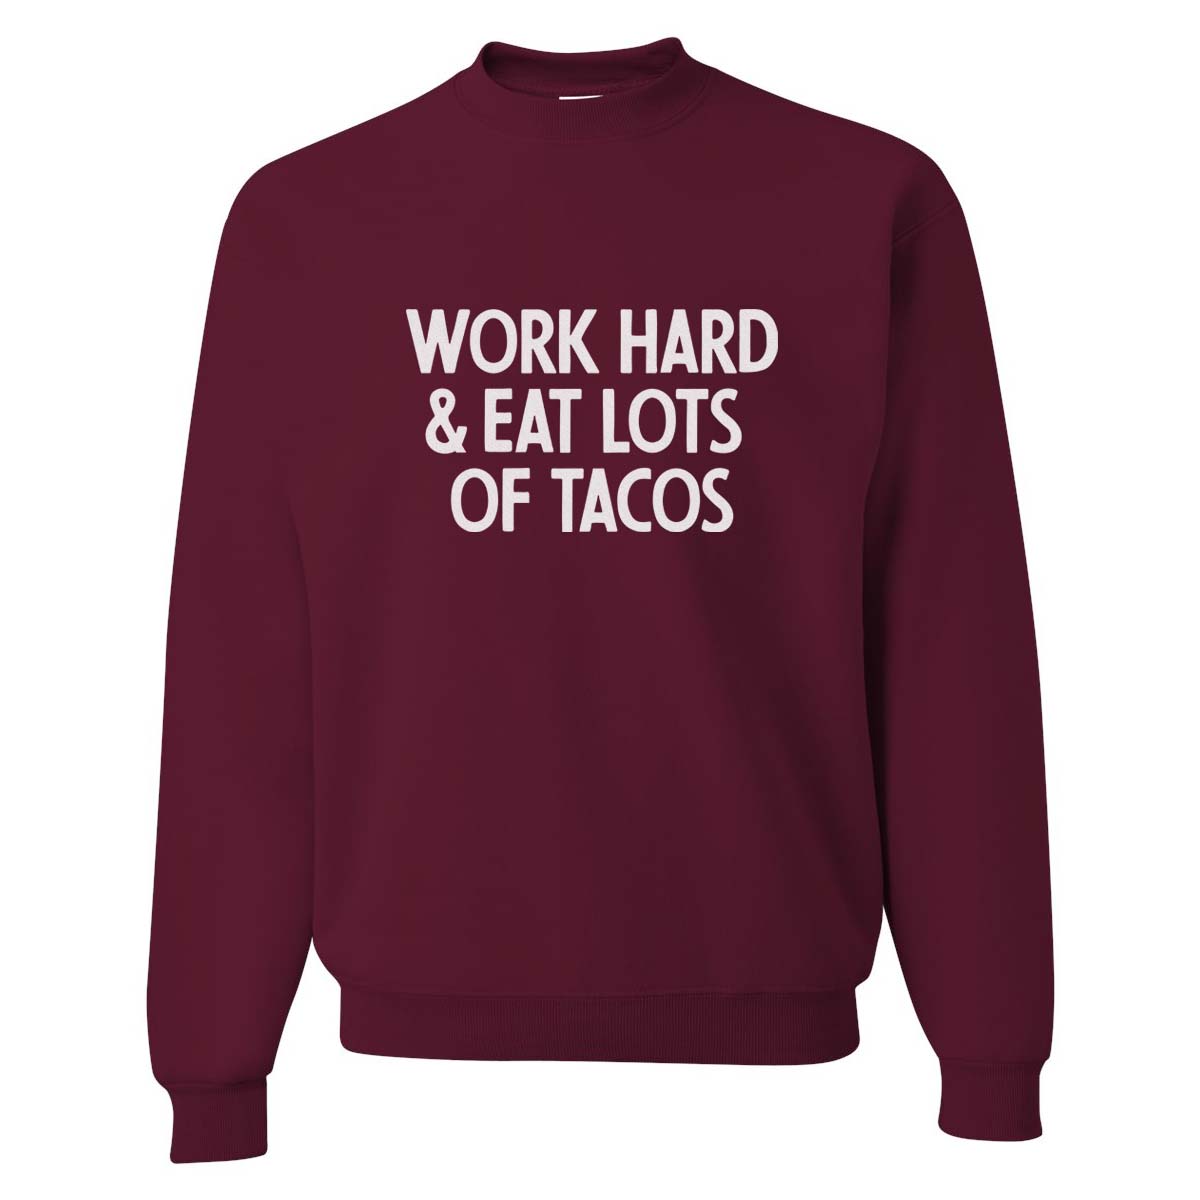 Work Hard & Eat Lots of Tacos Sweatshirt